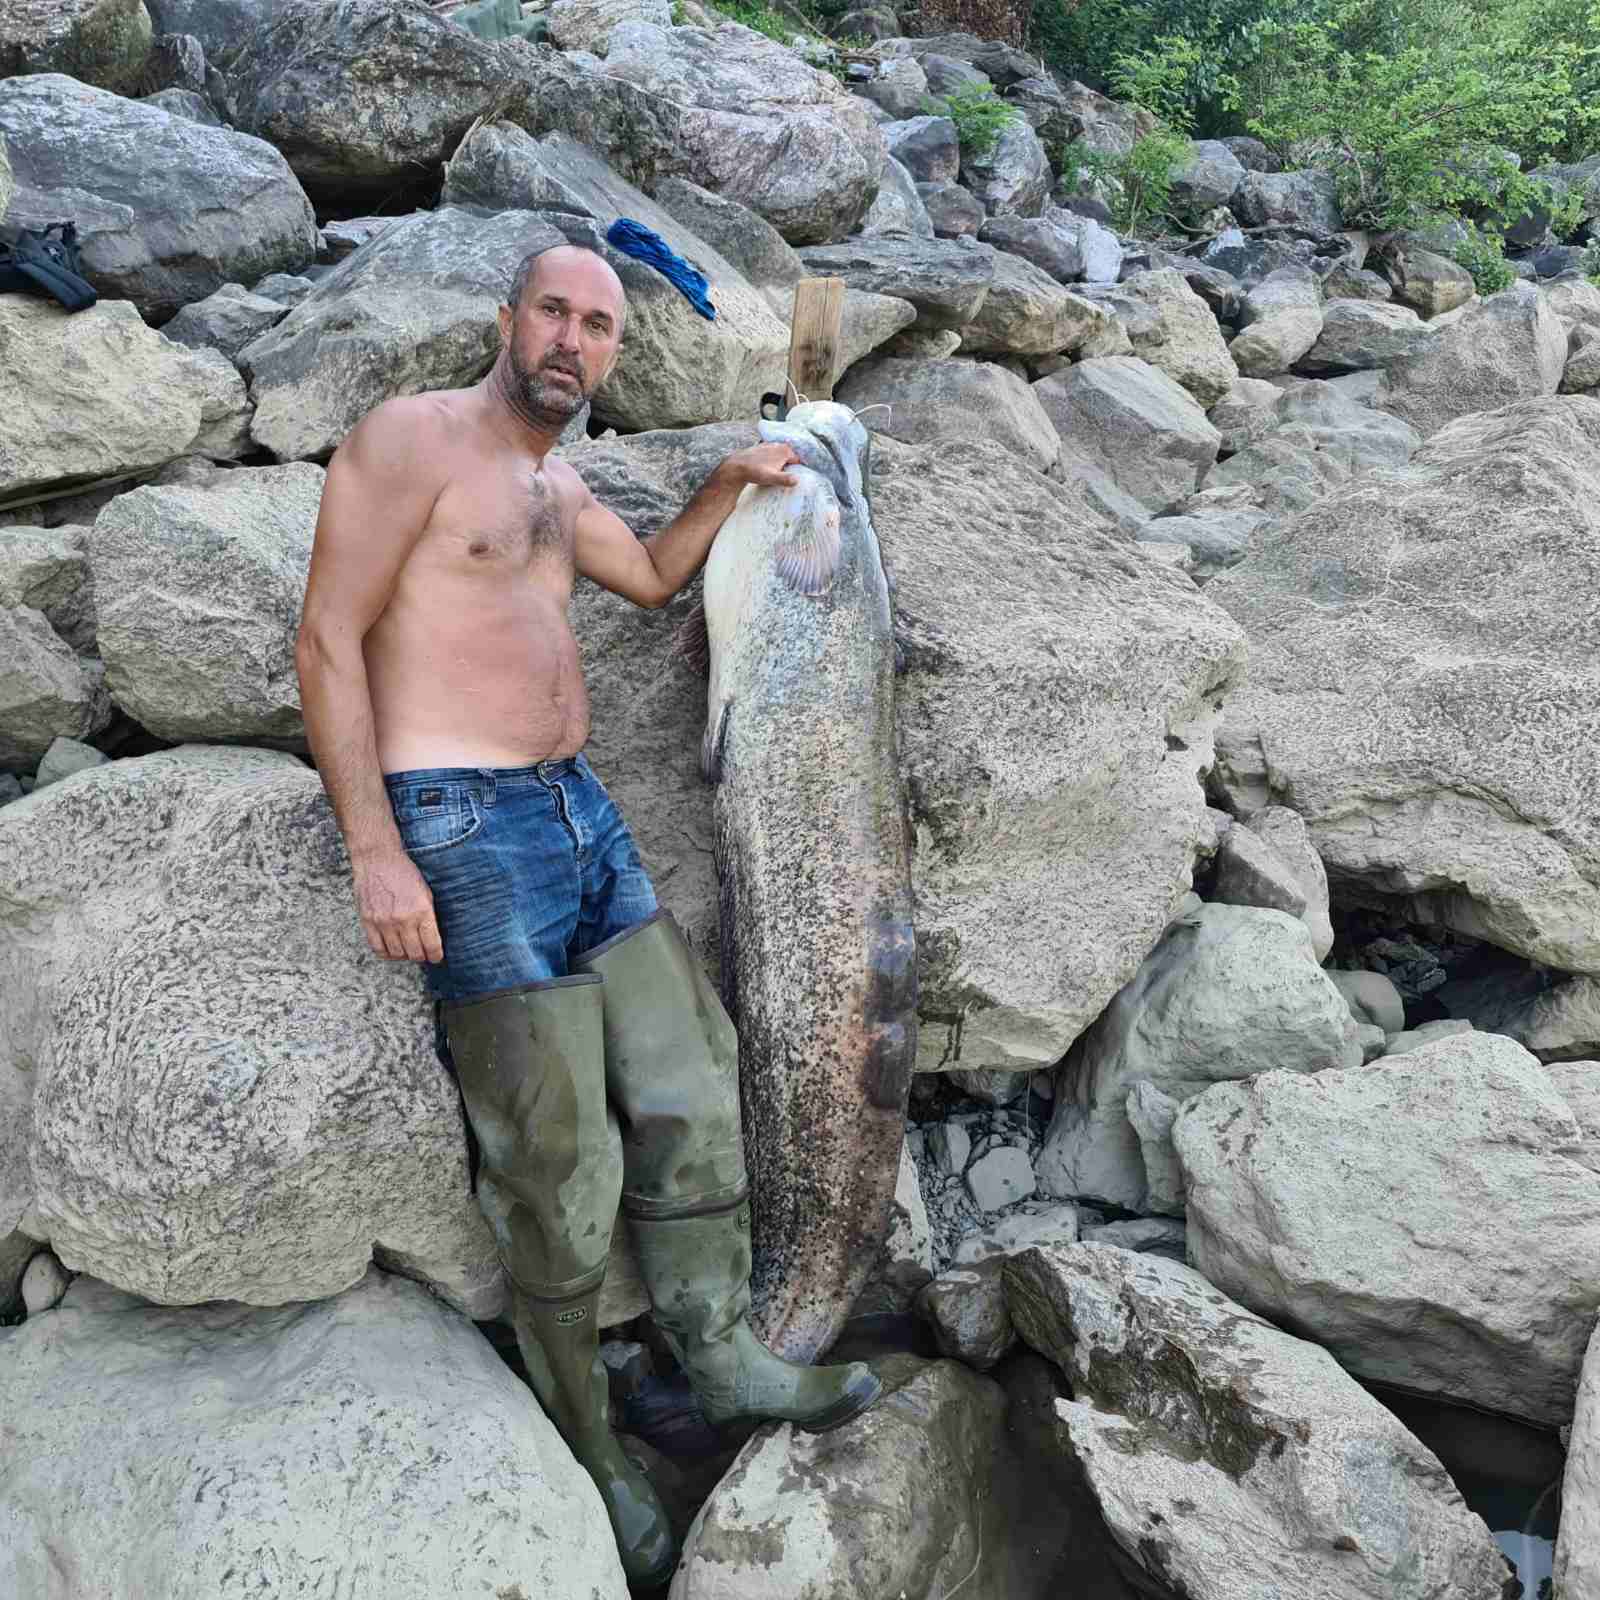 Uhvaćen som kapitalac od 58,5 kilograma, iskusni Selmir-Bego Pezerović poslije višesatne borbe uspio savladati riječnog diva (FOTO)